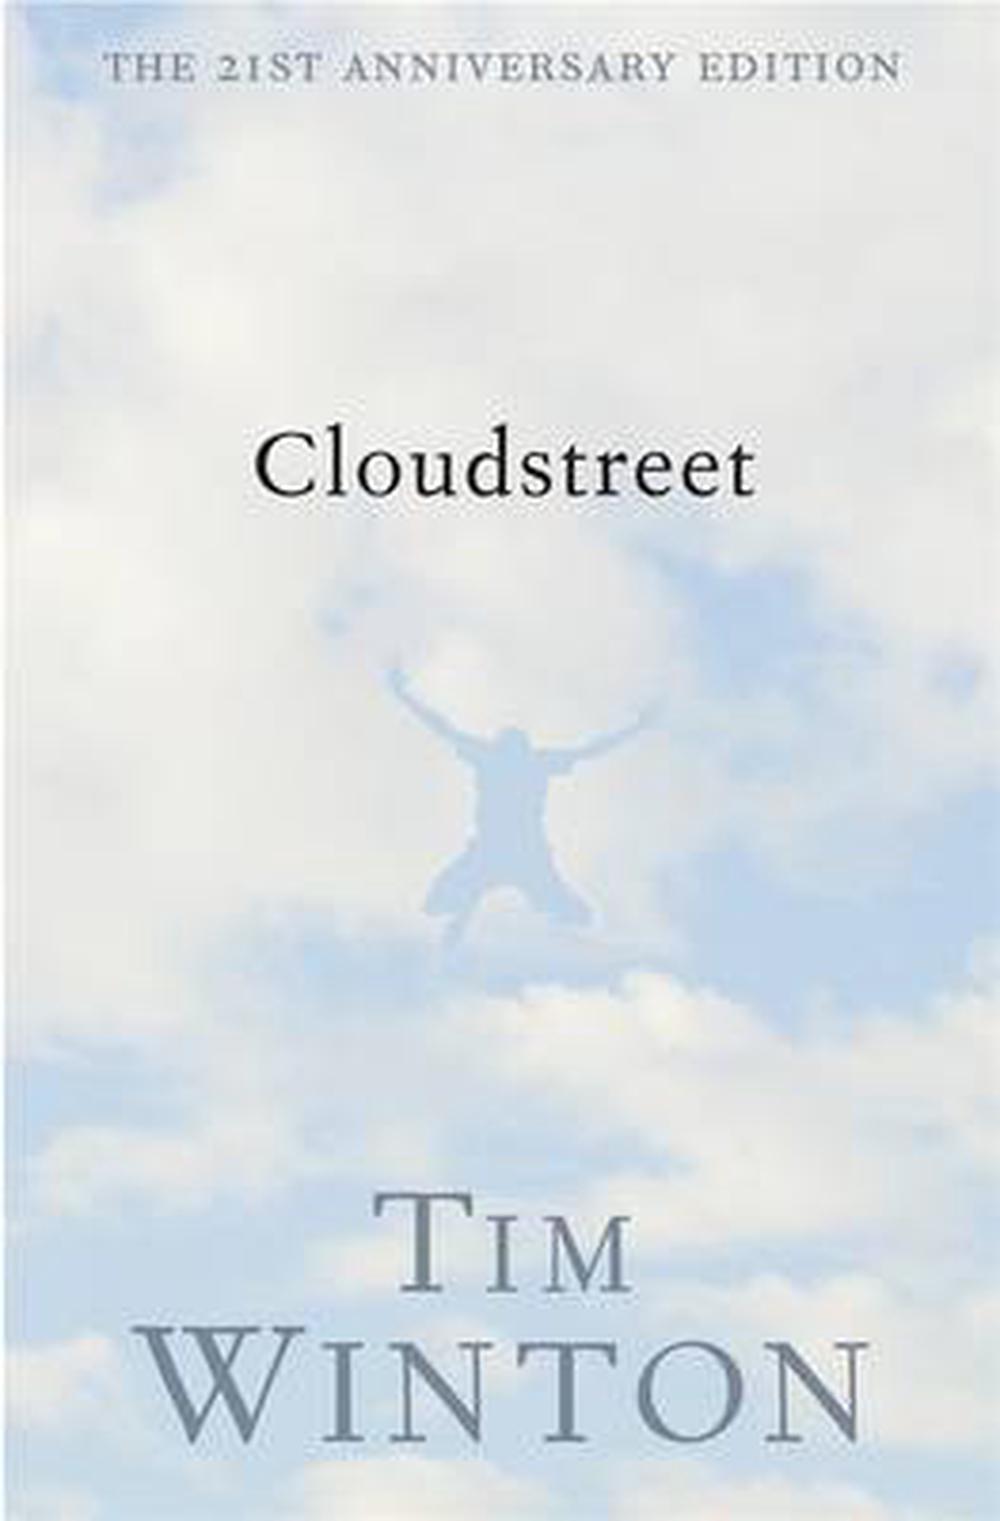 cloudstreet author